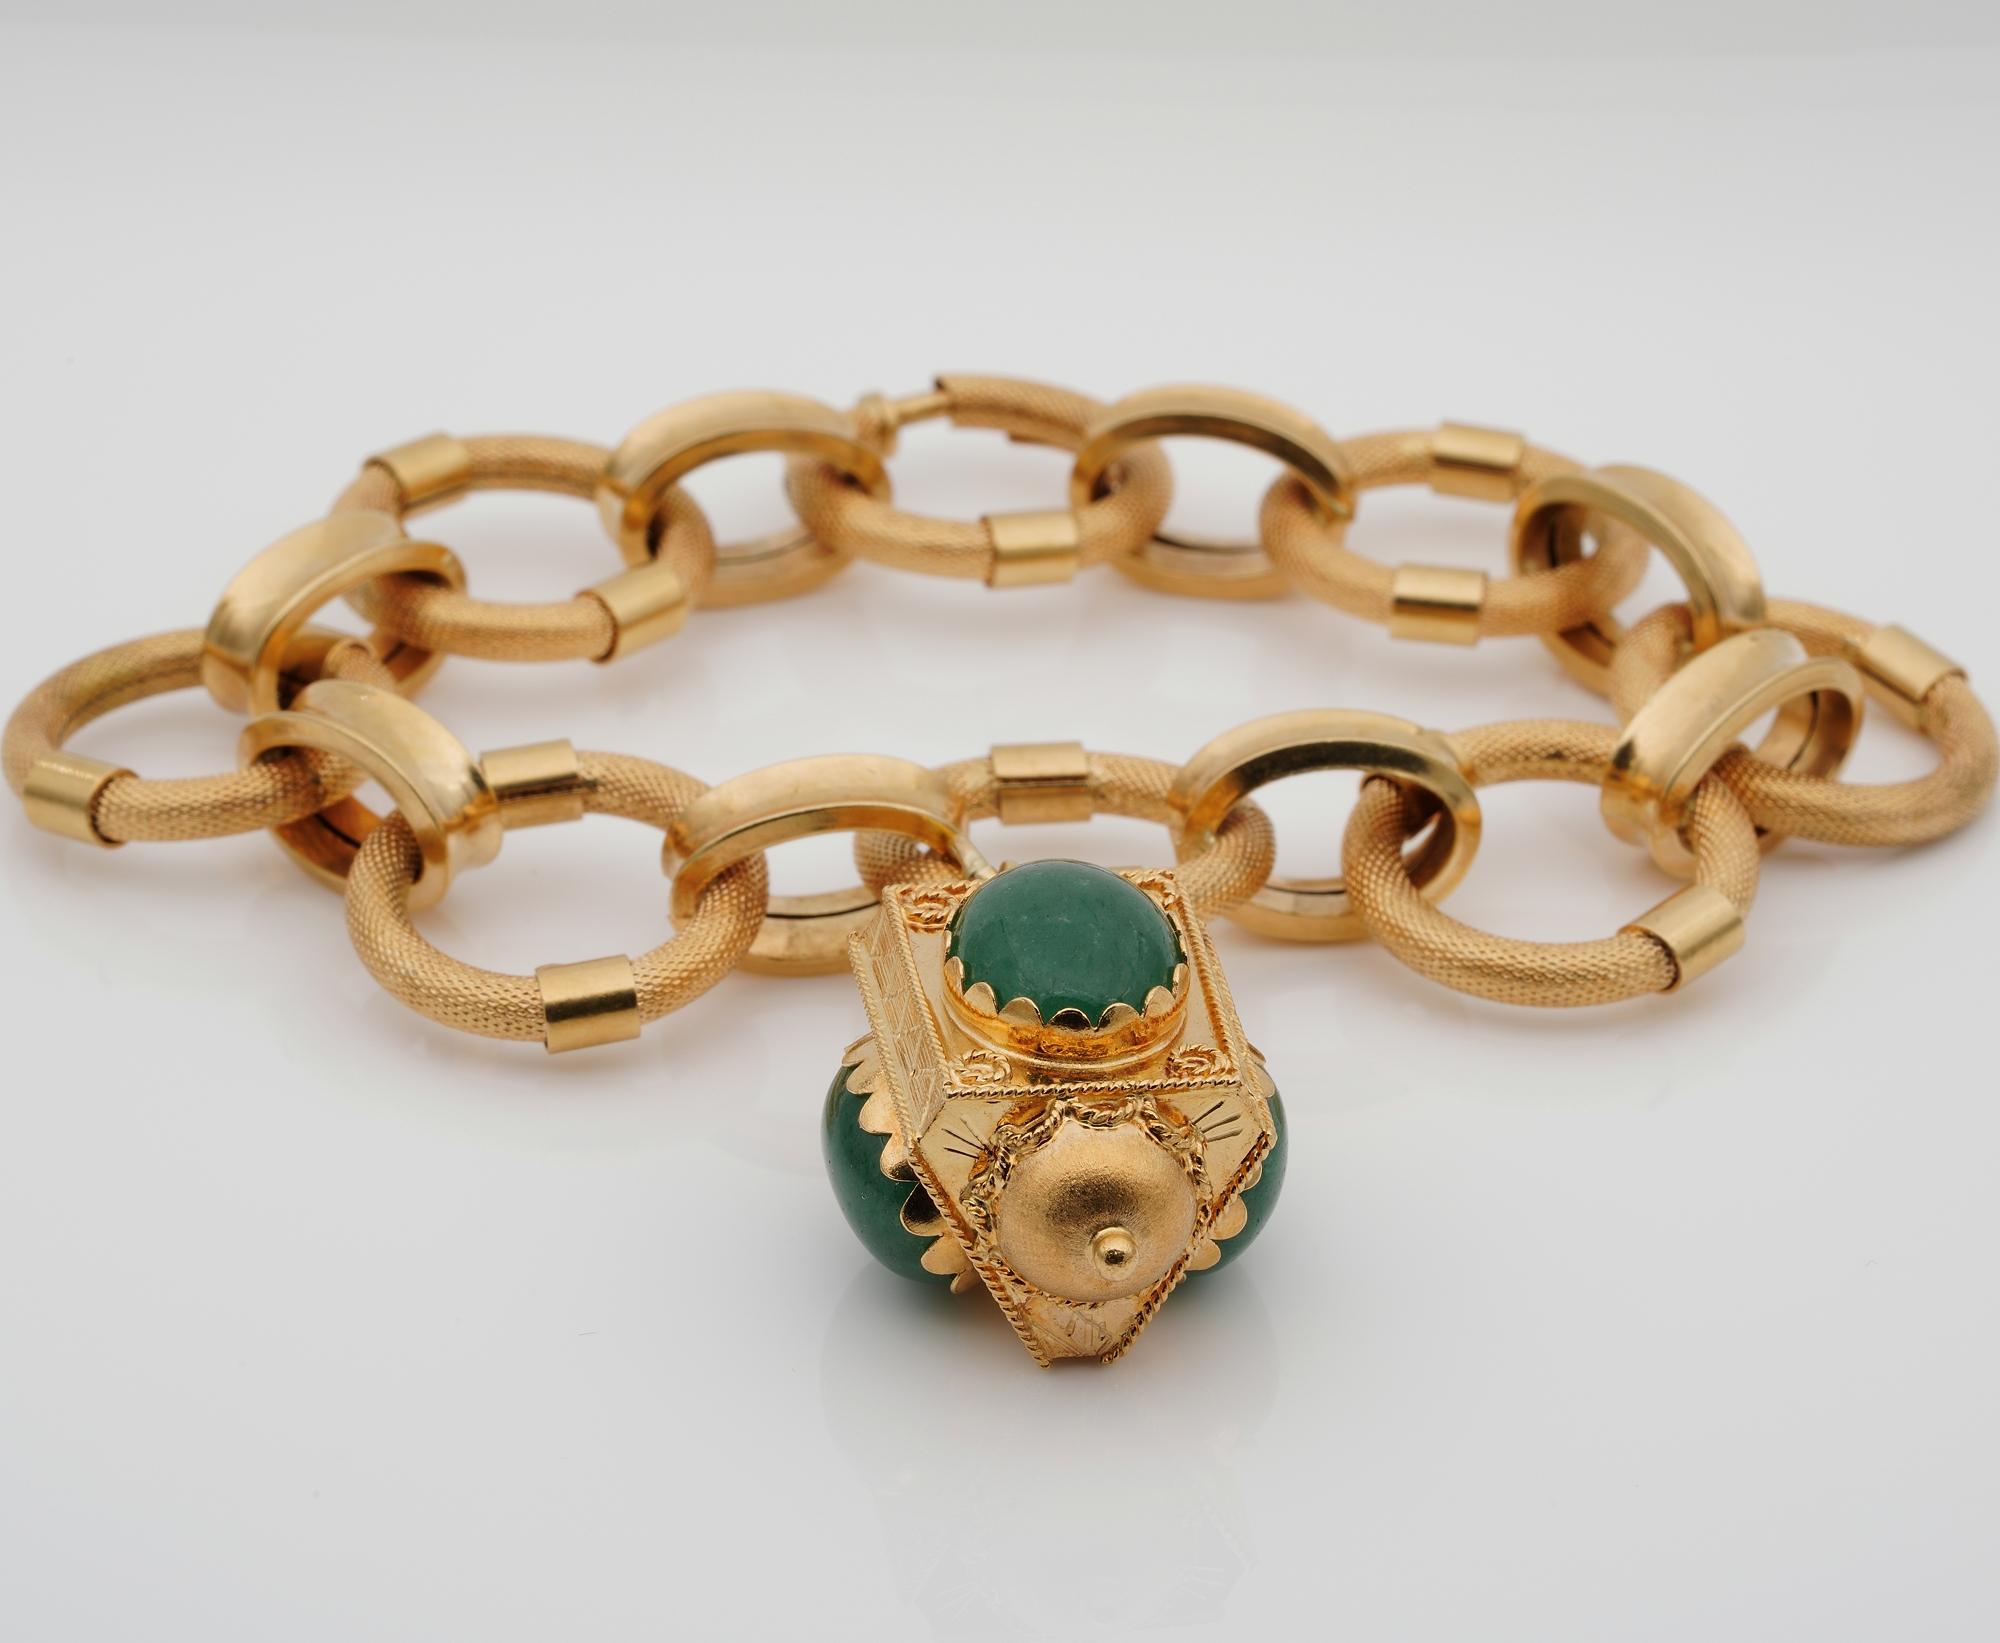 Dieses hervorragende Beispiel für Retro Etruscan Wiederbelebung Fob Armband ist aus massivem 18 KT Gold
Die prächtige Verarbeitung der Vergangenheit und der Stil von La Bella Vita 1950 ca.
Entworfen mit ineinander verschlungenen Goldgliedern, die